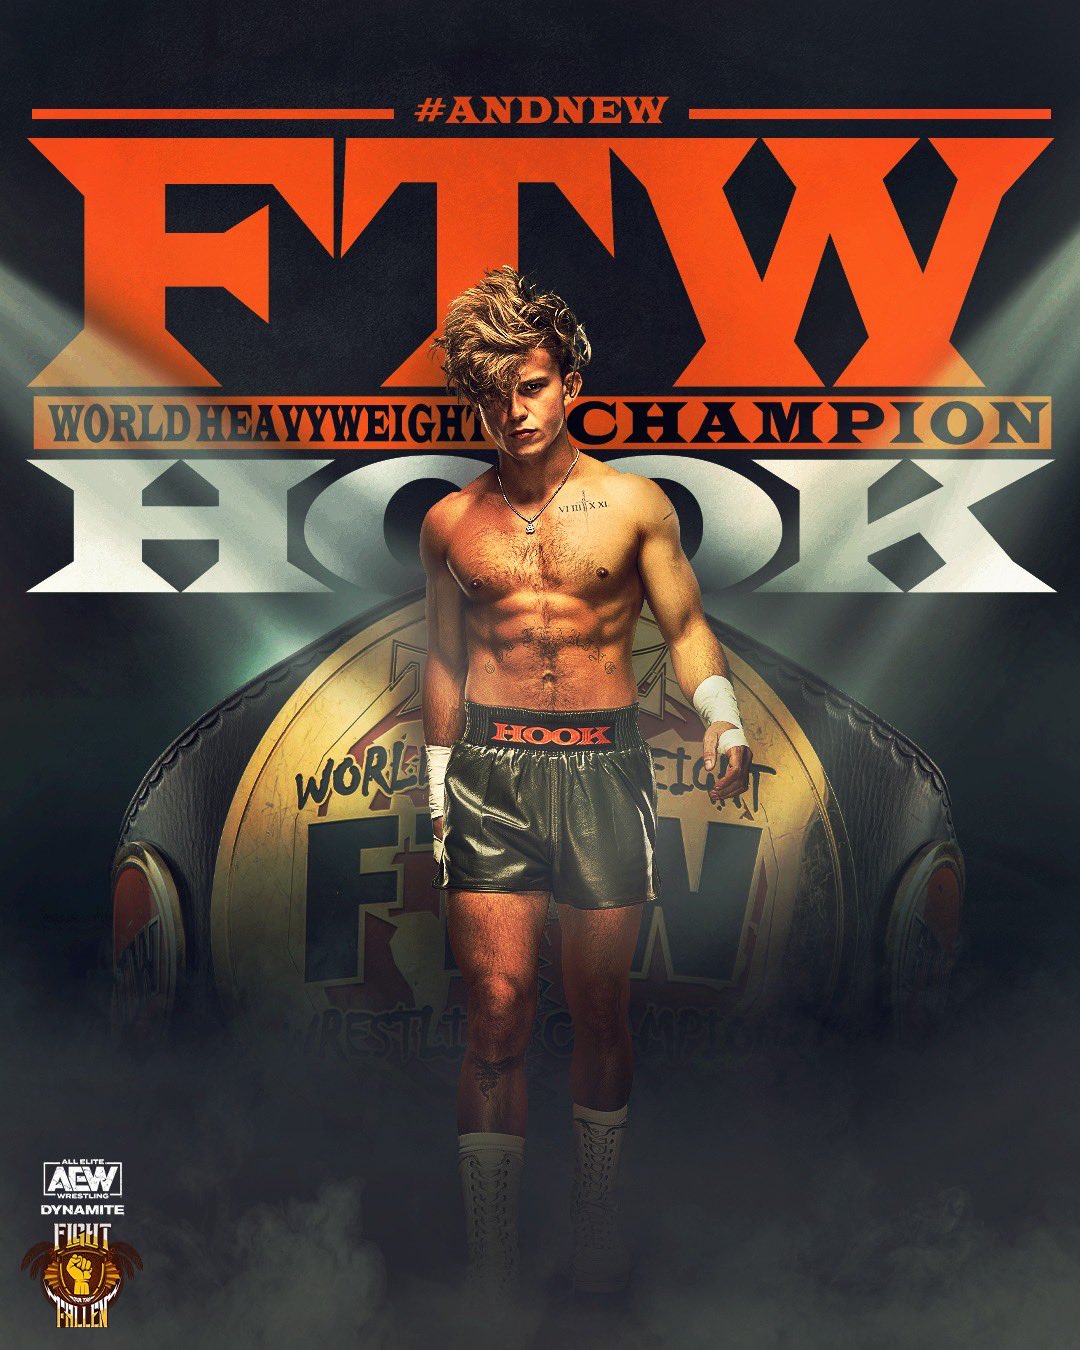 All Elite Wrestling on X: #AndNEW!!! #FTW Champion #HOOK @730hook  #AEWDynamite #FightForTheFallen  / X